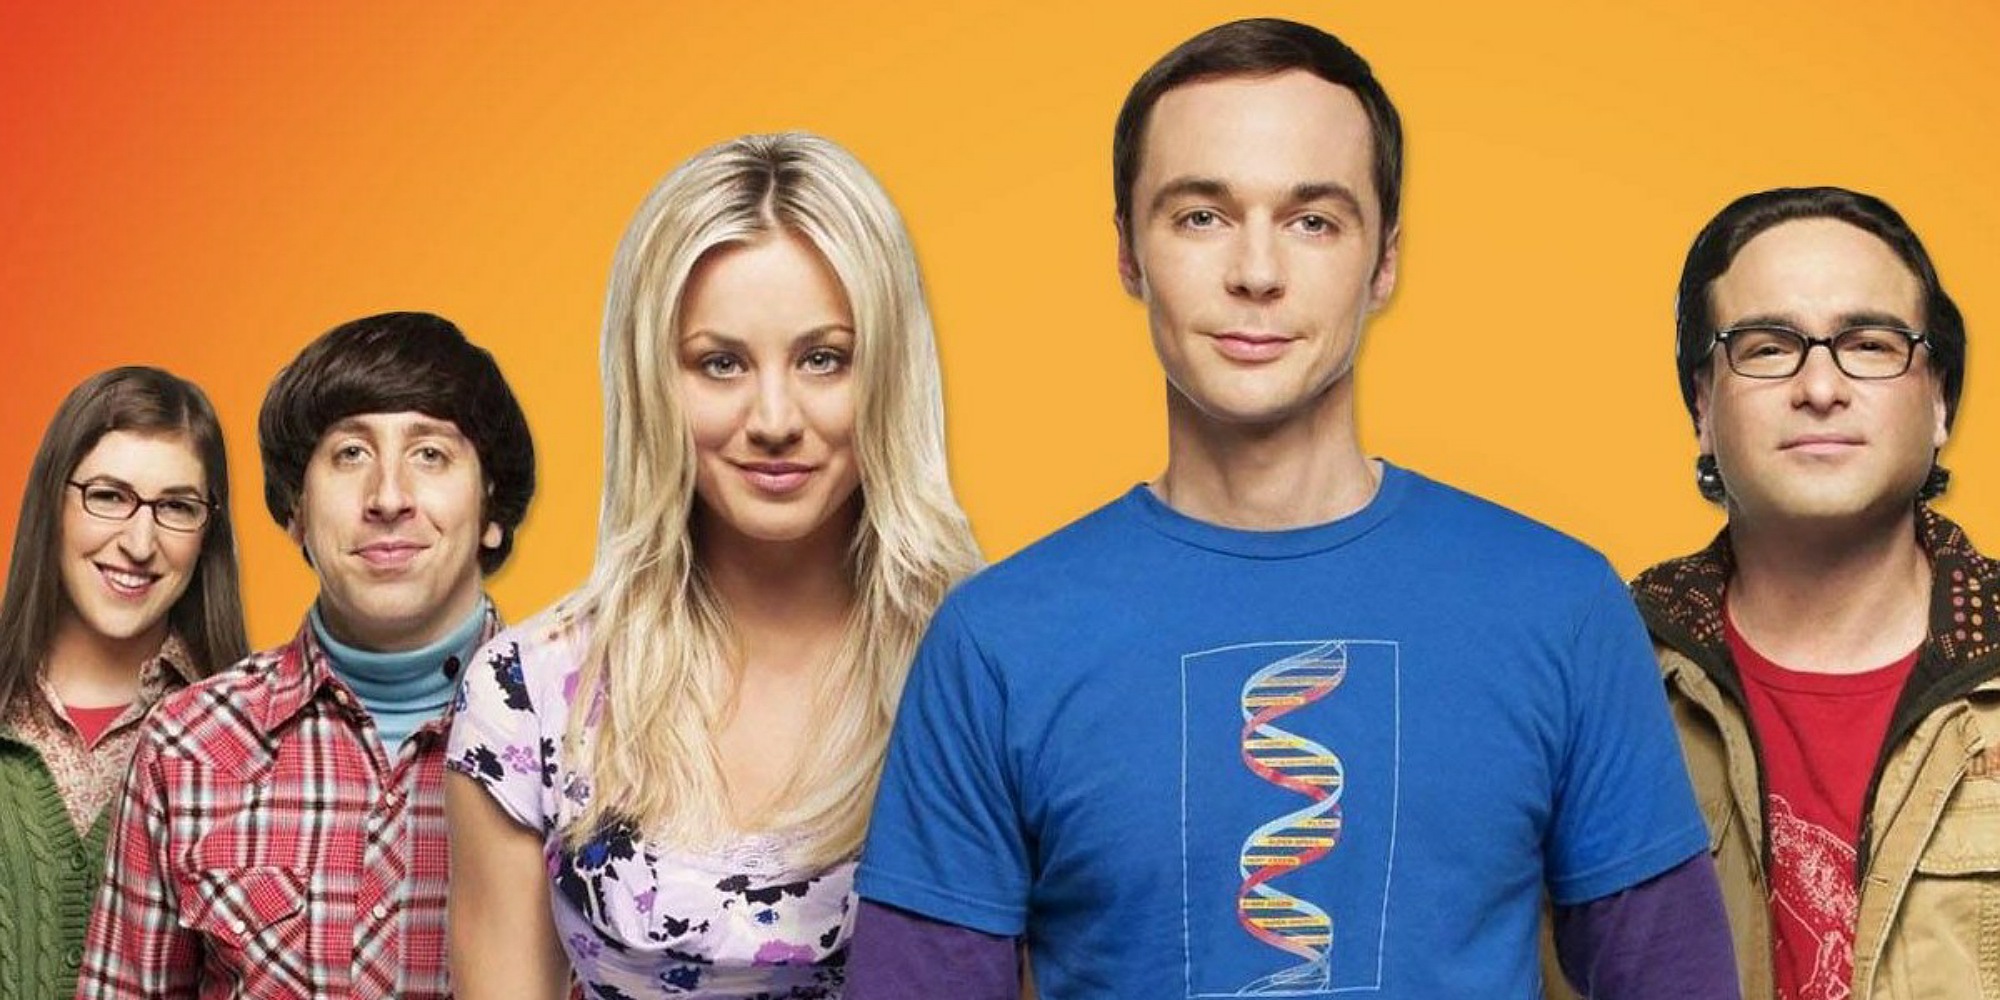 سریال The Big Bang Theory